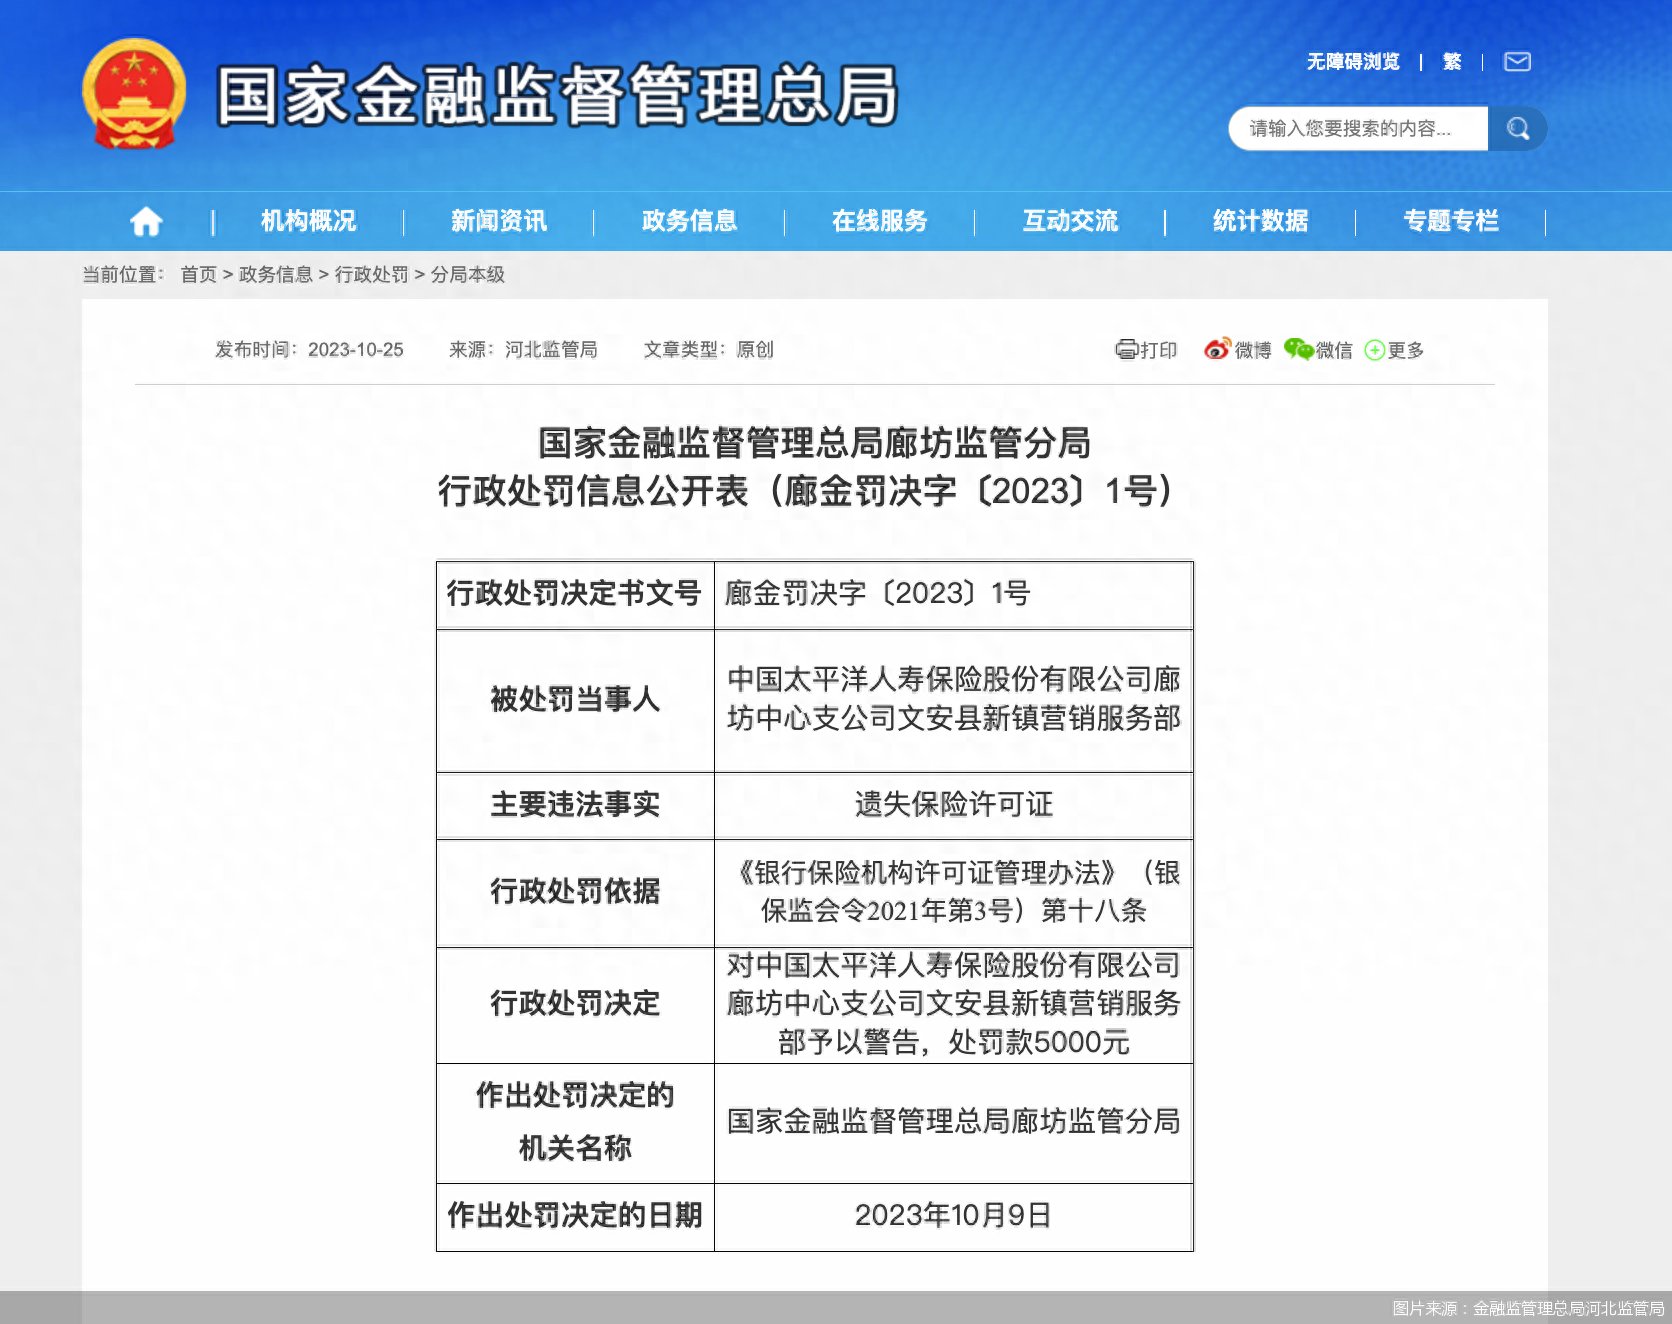 因遗失保险许可证，太保寿险文安县新镇营销服务部被罚0.5万元